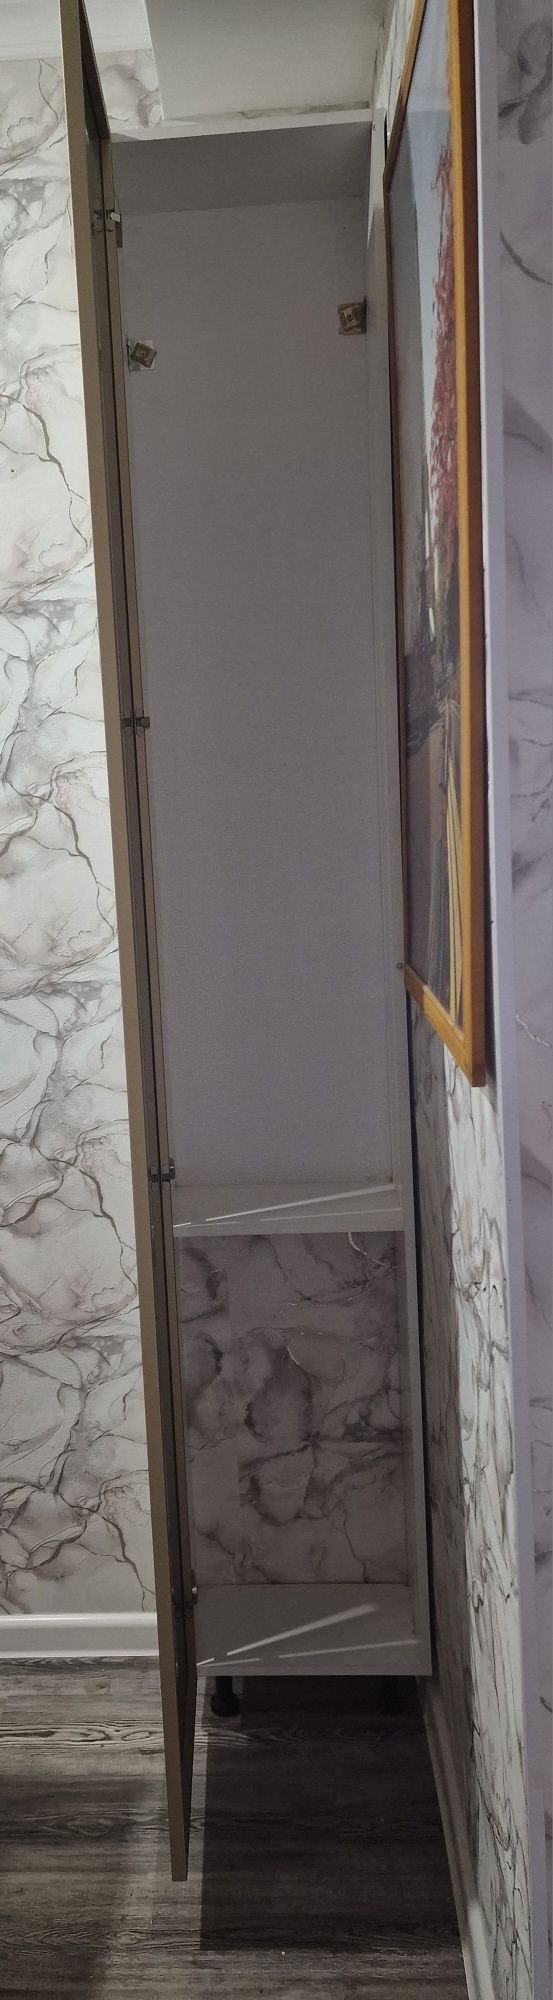 Красивый высокий шкафчик Пенал Зеркальный